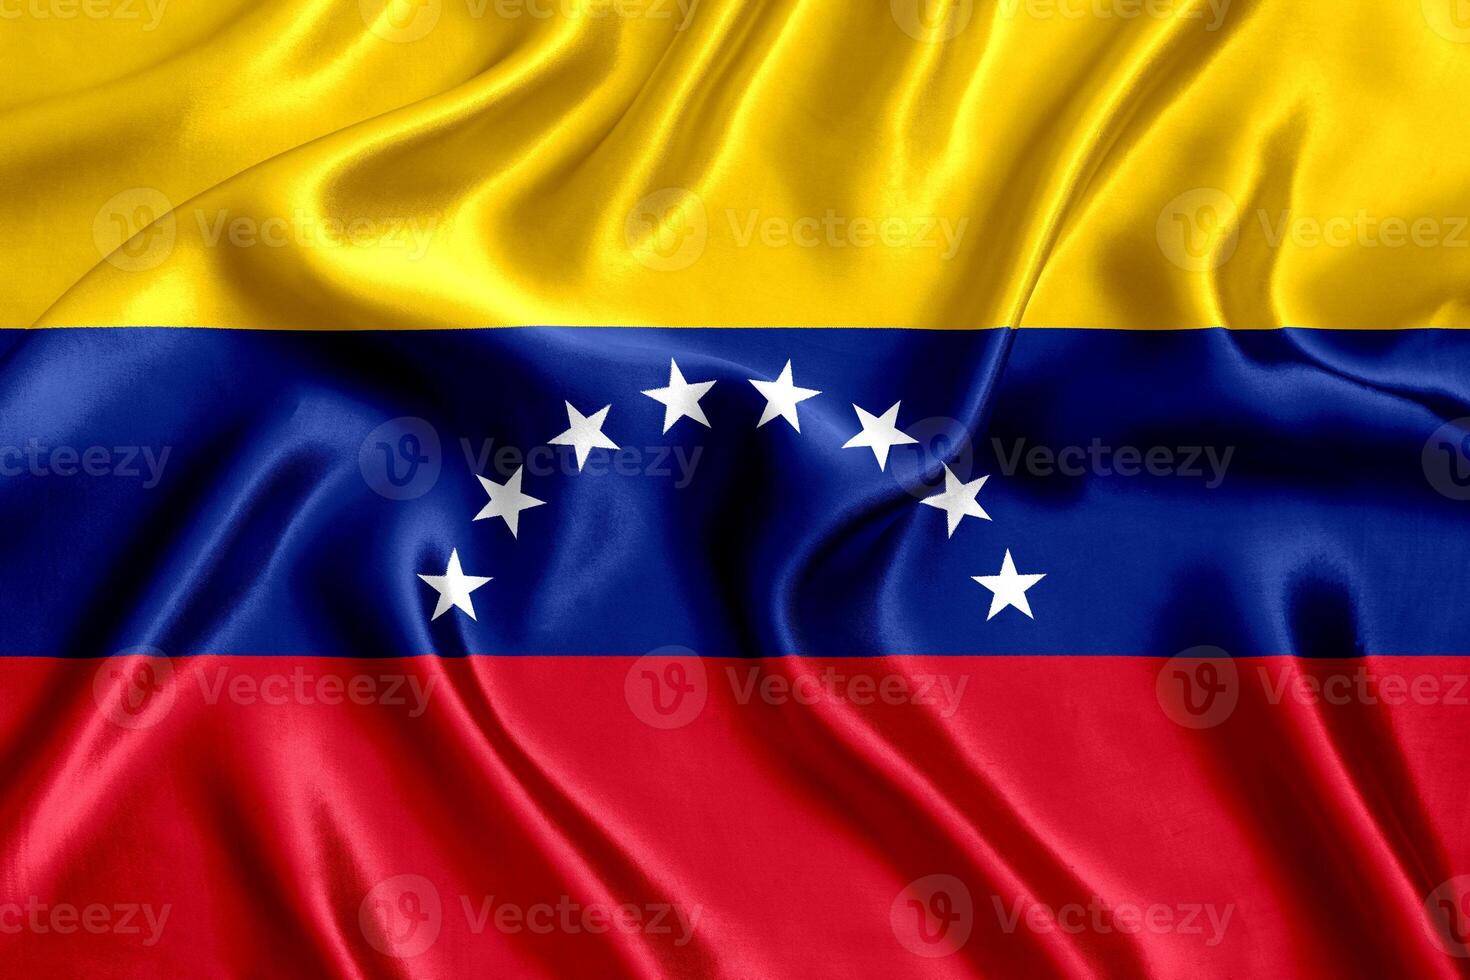 Flag of Venezuela silk close-up photo